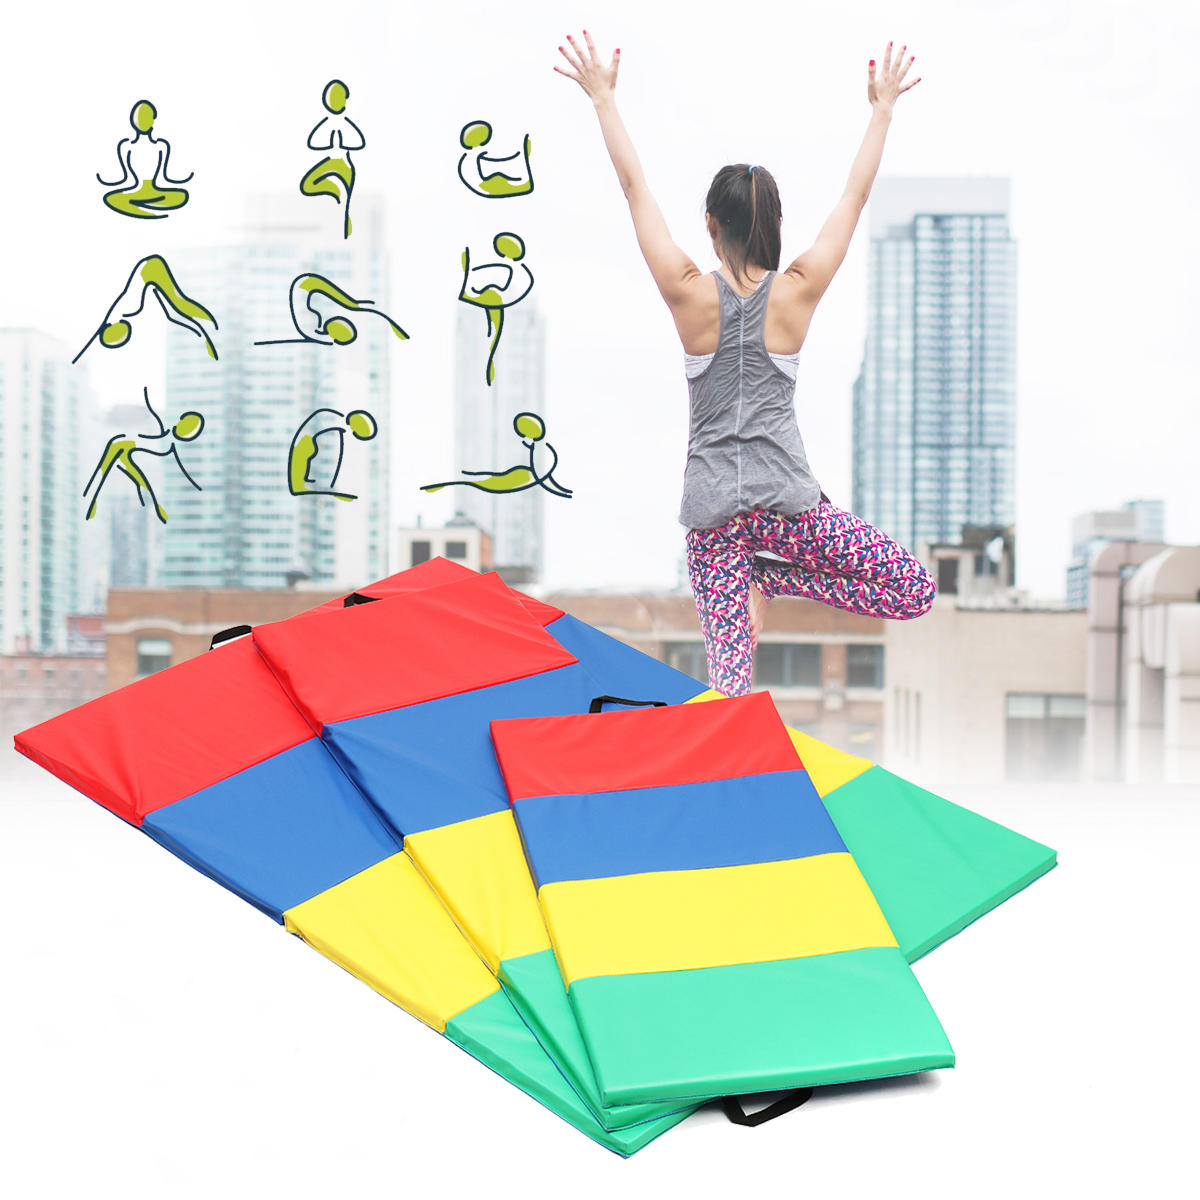 4 składane maty gimnastyczne do jogi, ćwiczeń w siłowni, panele toru powietrznego do tumblingu, wspinaczki i pilatesa